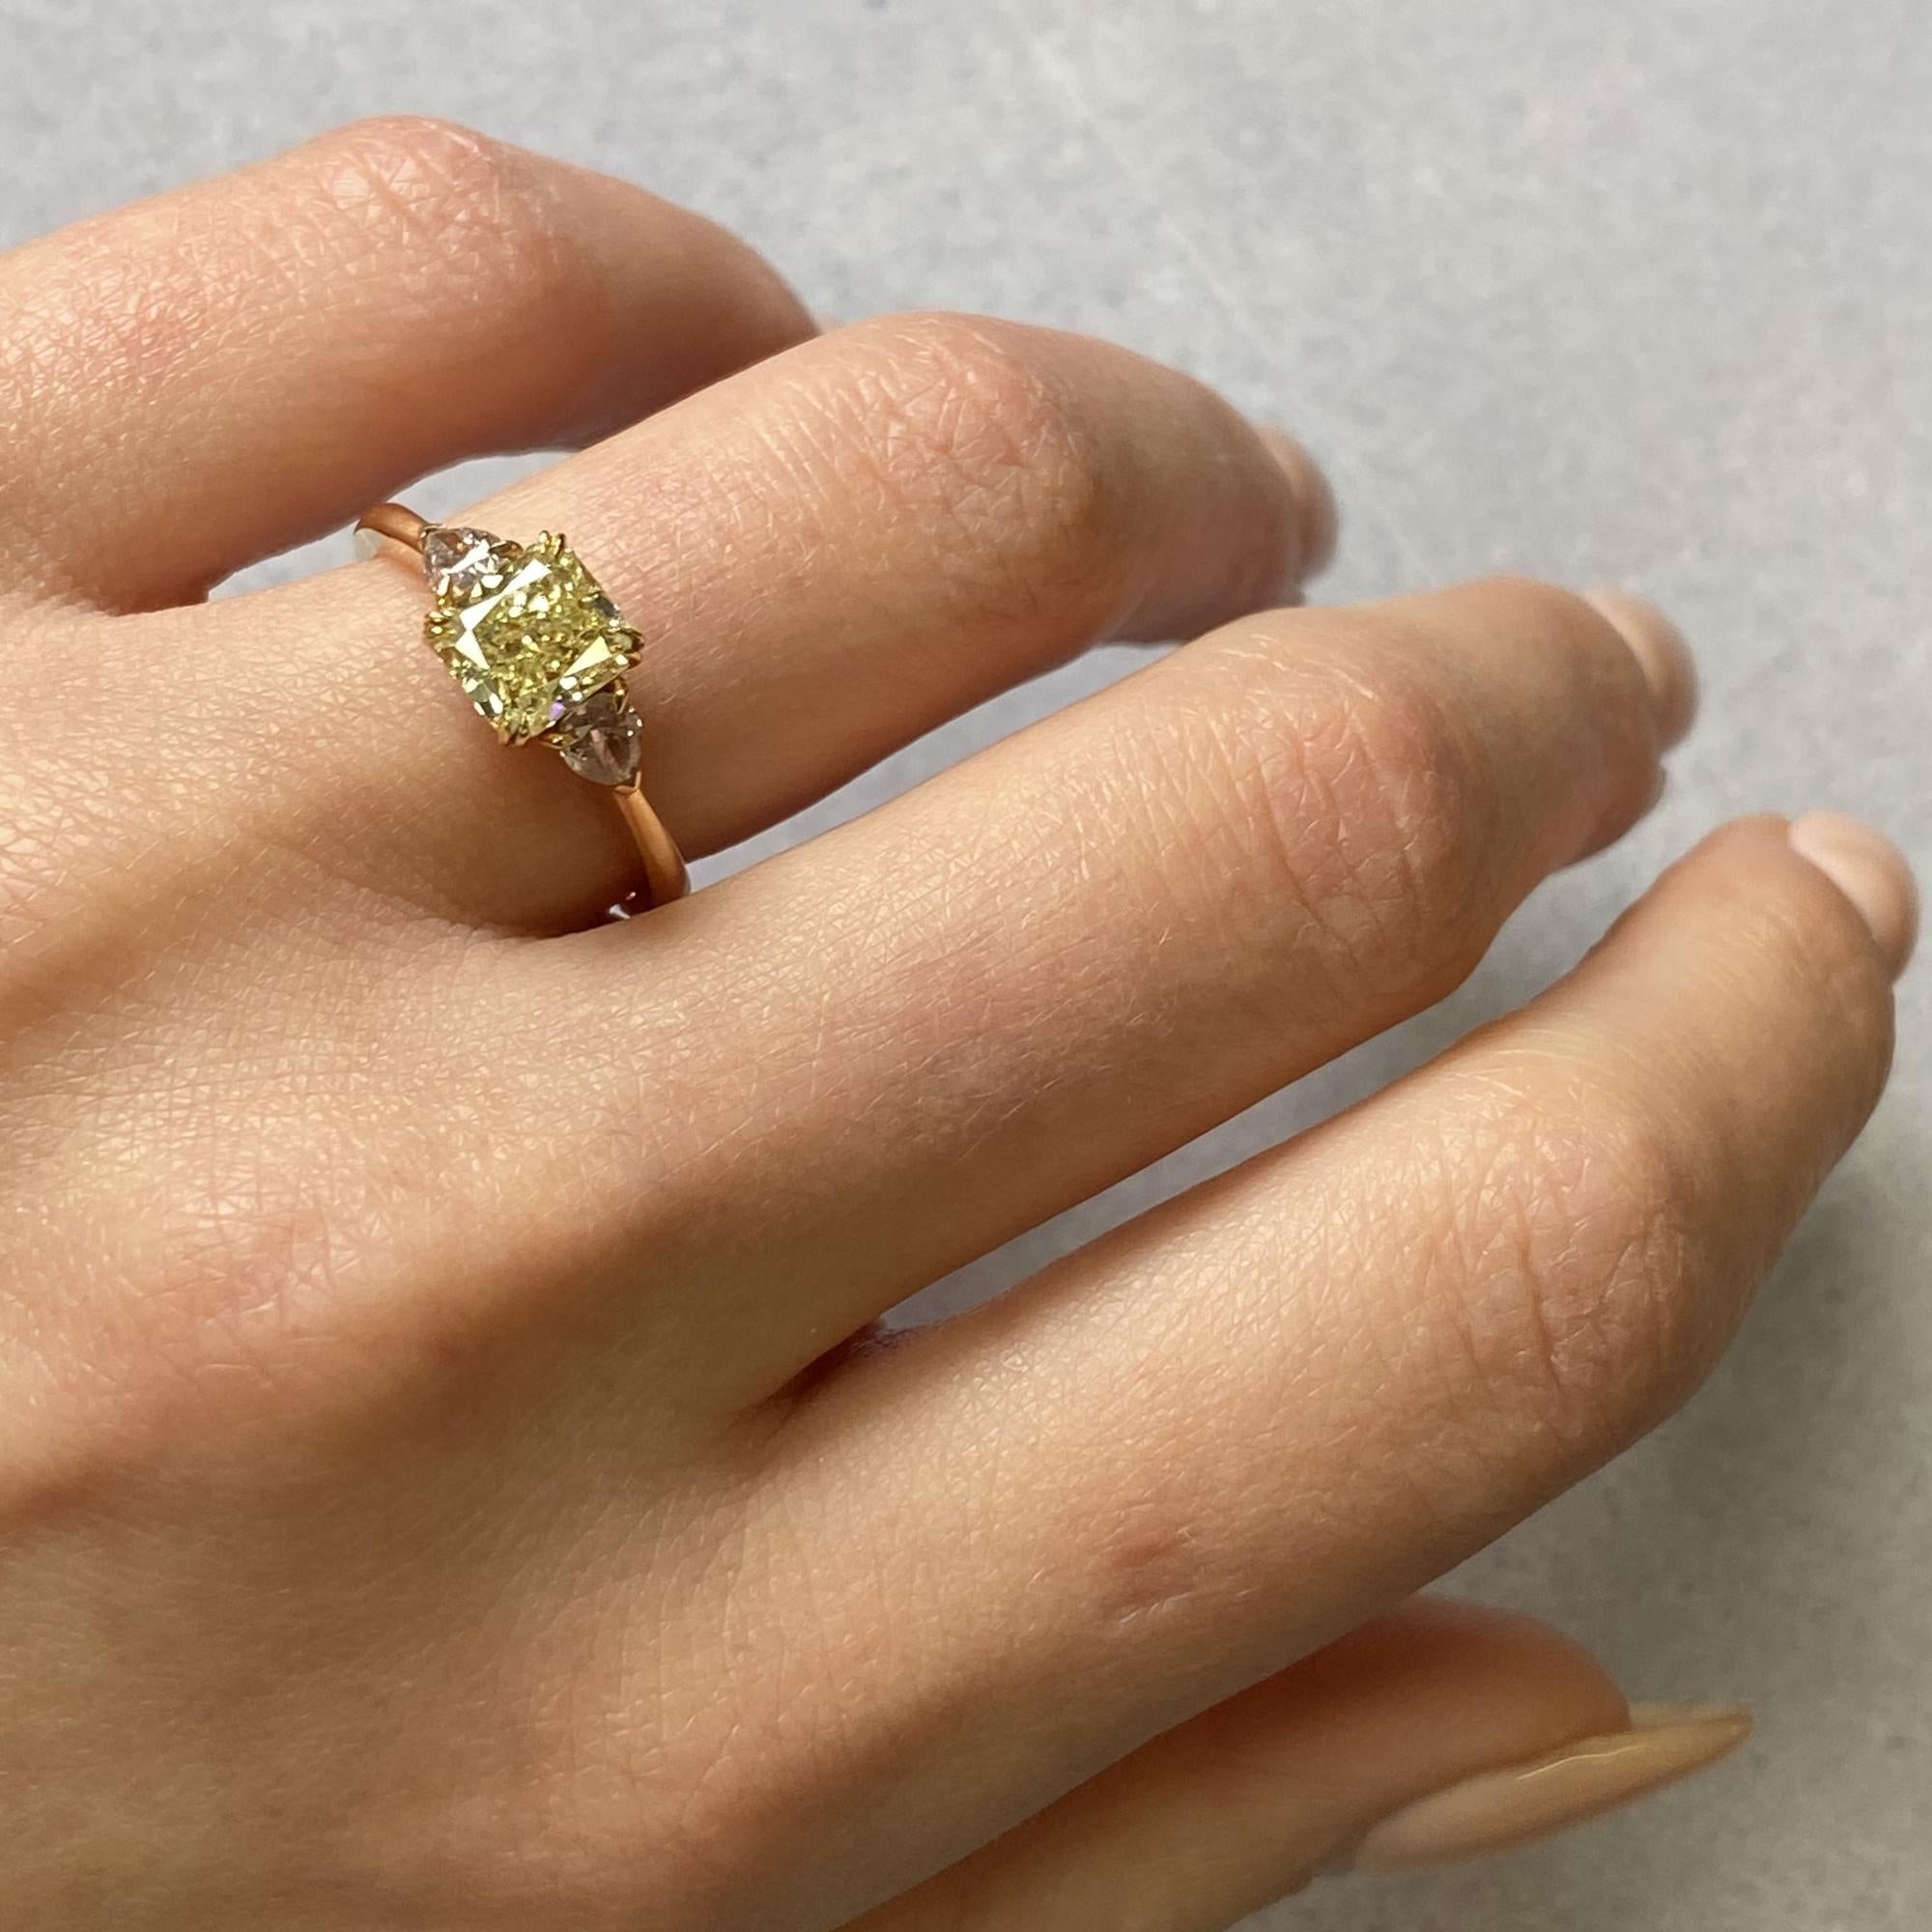 Rachel Koen 18K Yellow Gold Asscher and Pear Shaped Three-Stone Ring 1.37 Carat 2